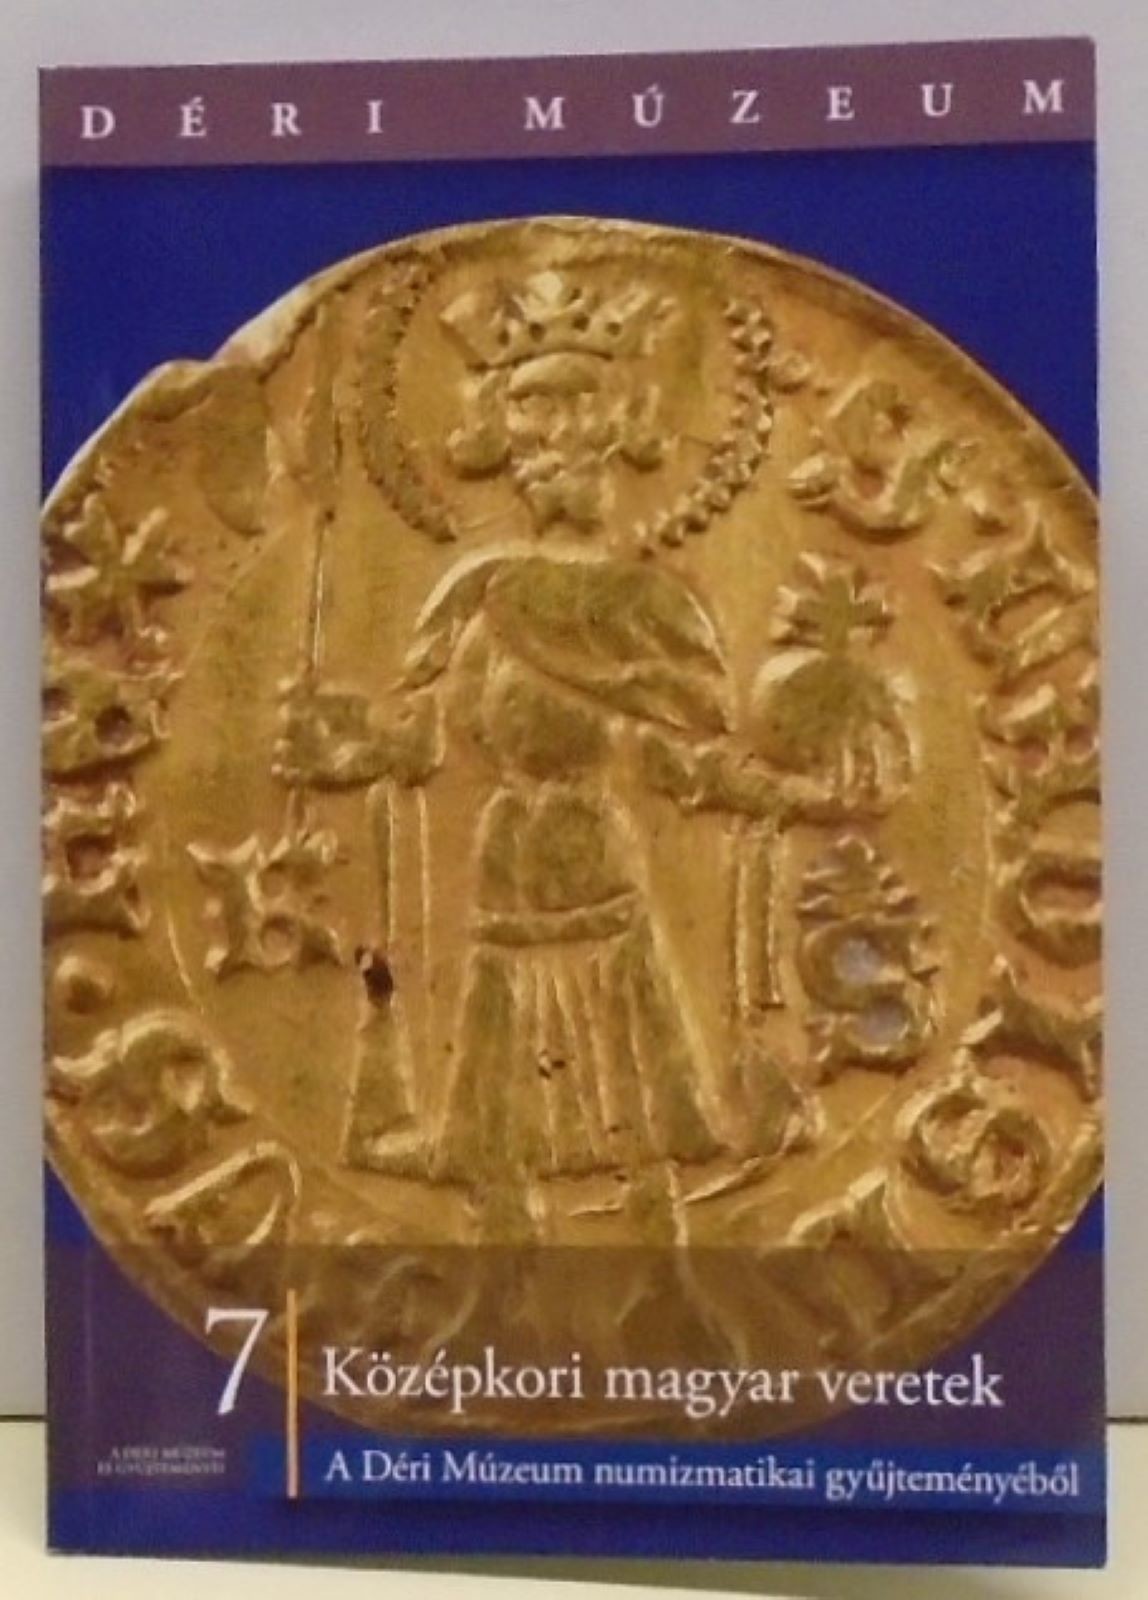 A Déri Múzeum és gyűjteményei 7. Novák Ádám: Középkori arany veretek A Déri Múzeum numizmatikai gyűjteményéből (Rippl-Rónai Múzeum CC BY-NC-ND)